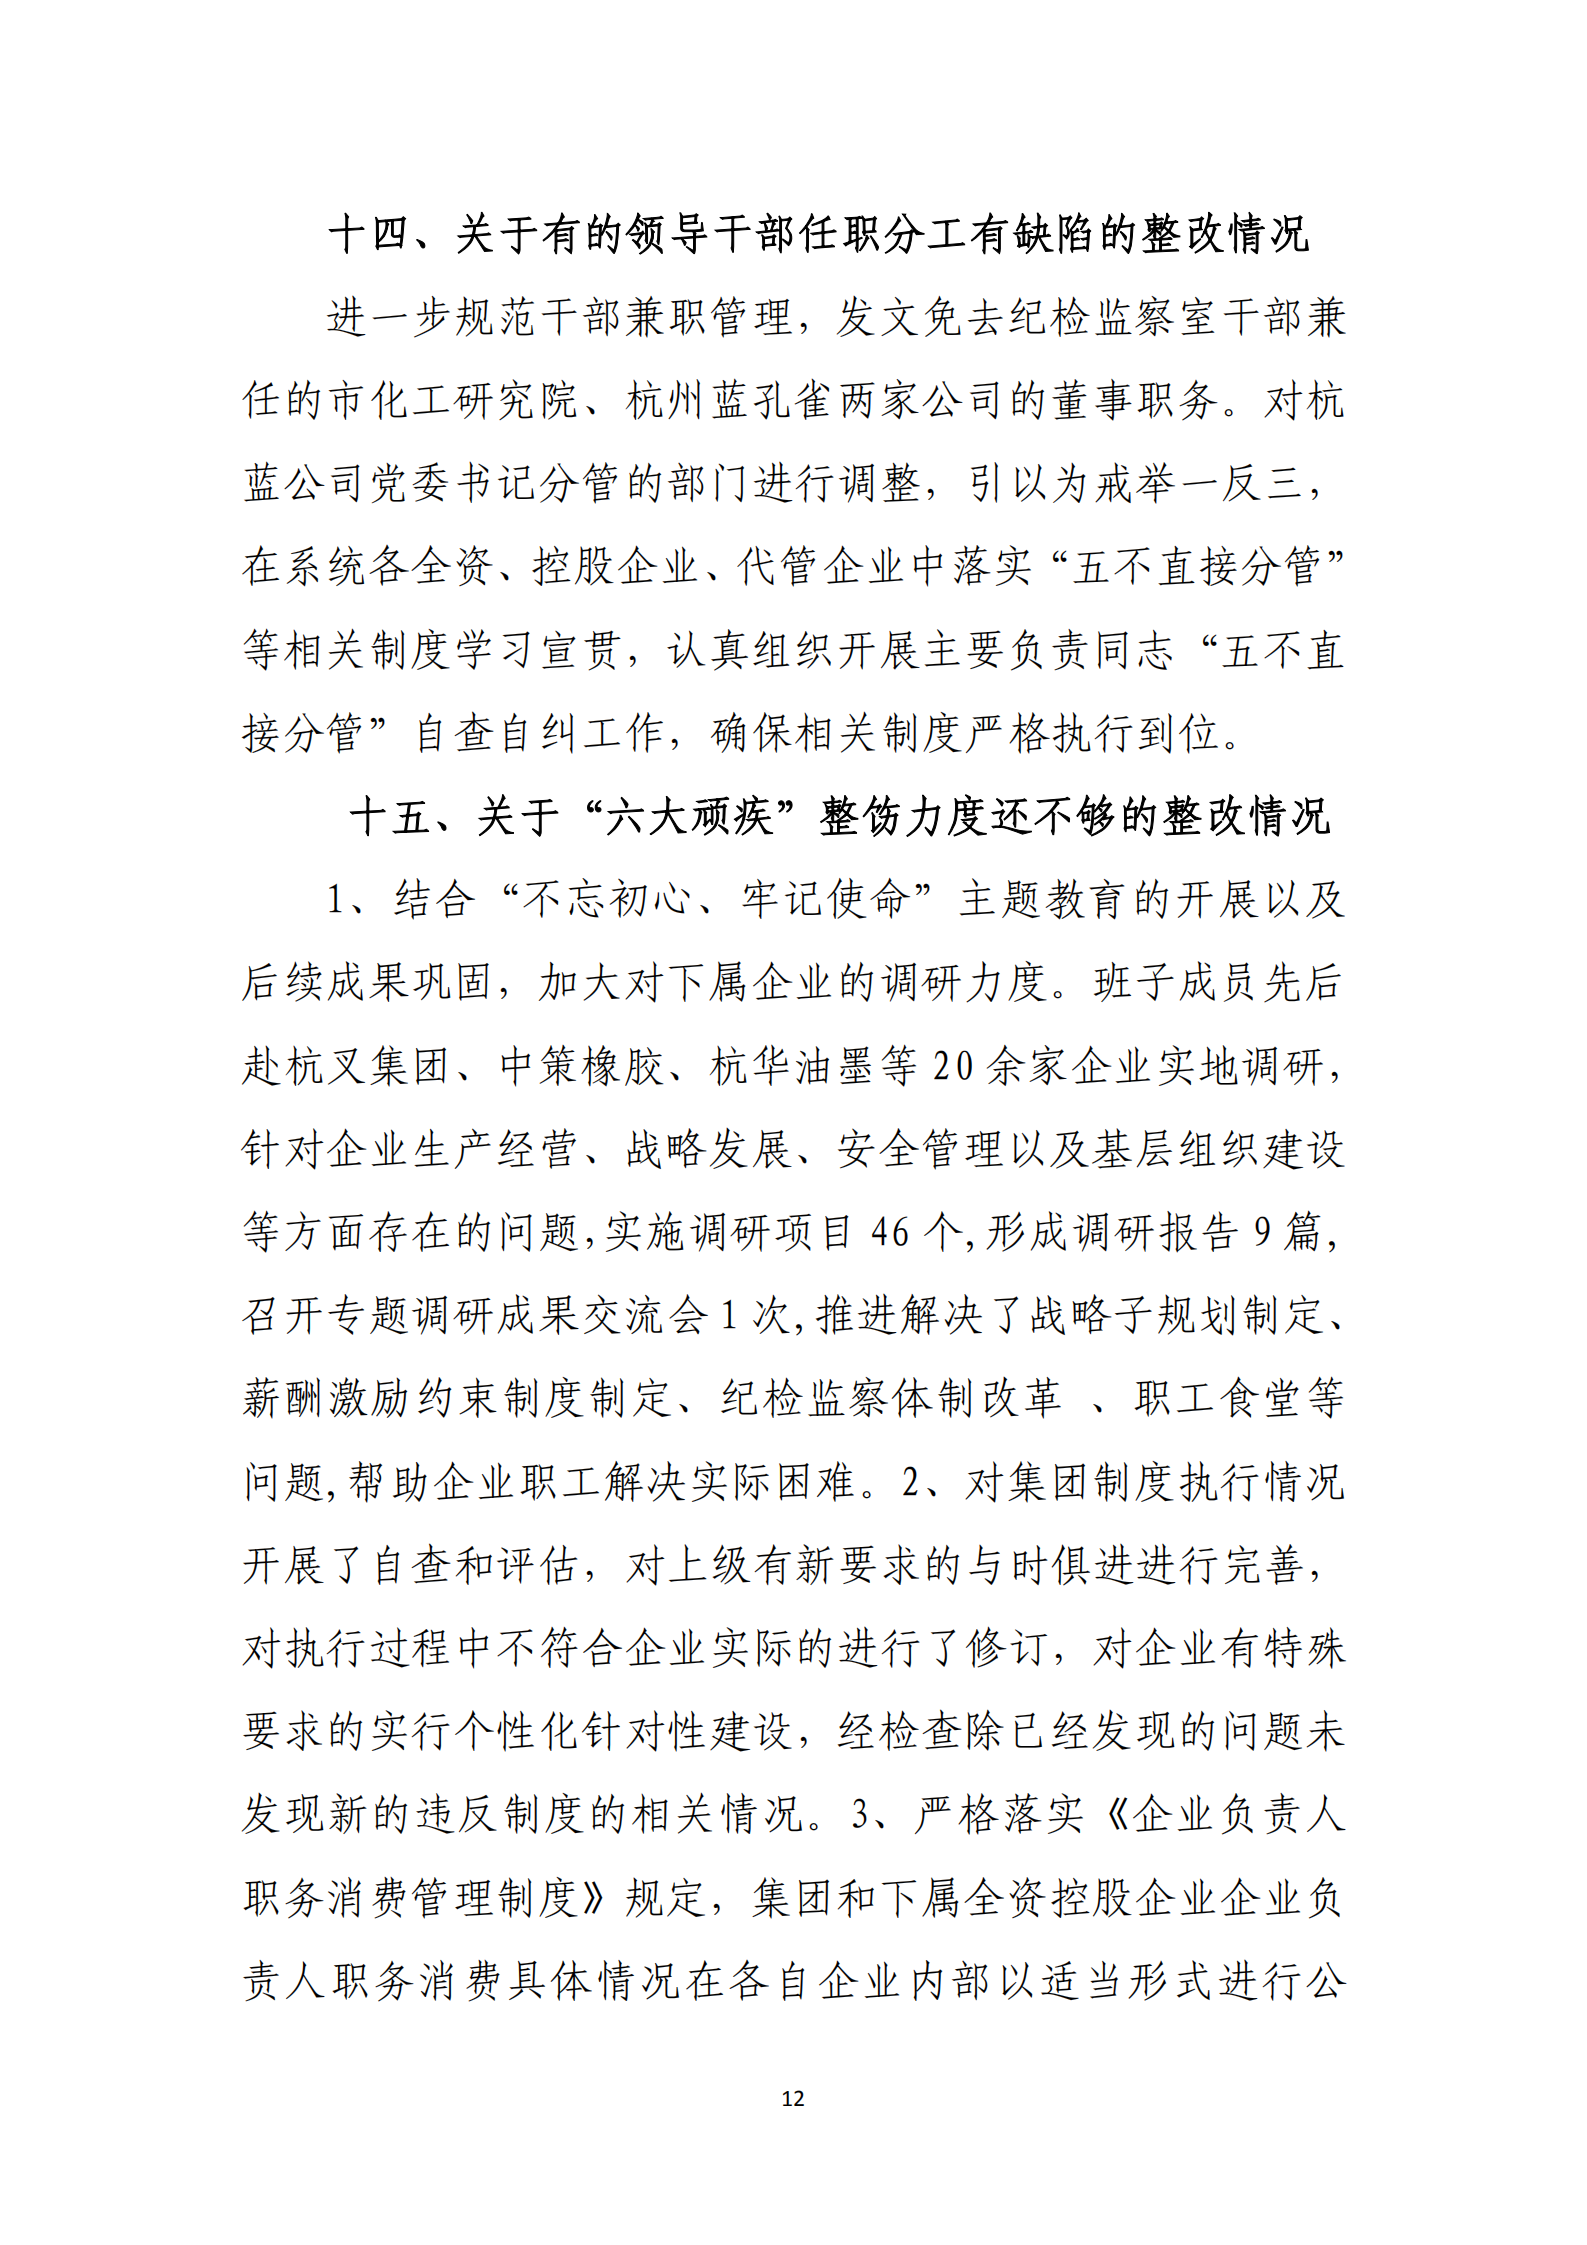 大阳城集团娱乐游戏党委关于巡察整改情况的通报_11.png